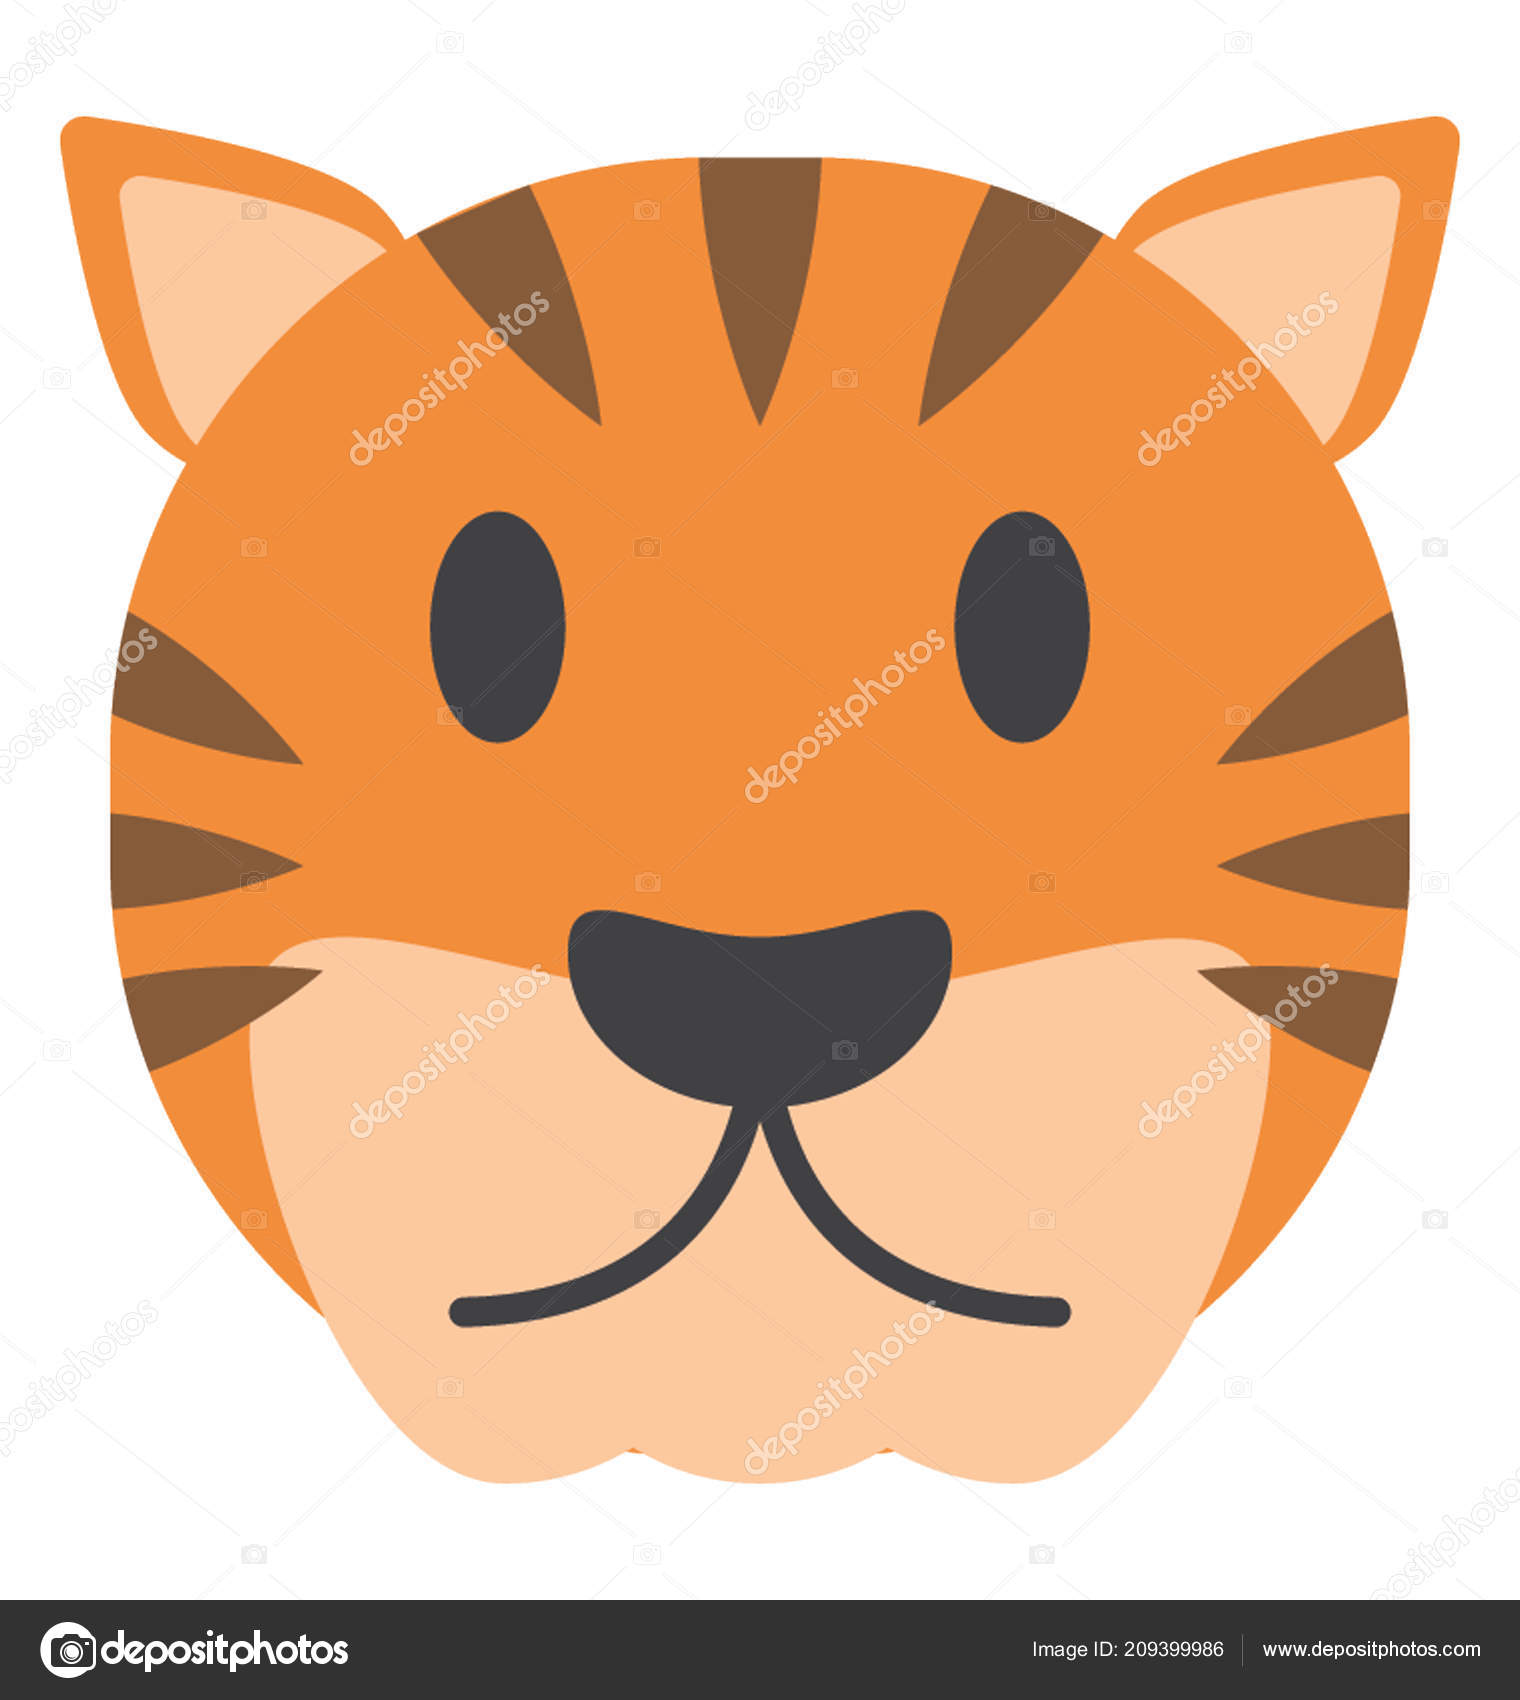 https://st4.depositphotos.com/5532432/20939/v/1600/depositphotos_209399986-stock-illustration-wild-animal-tiger-face.jpg